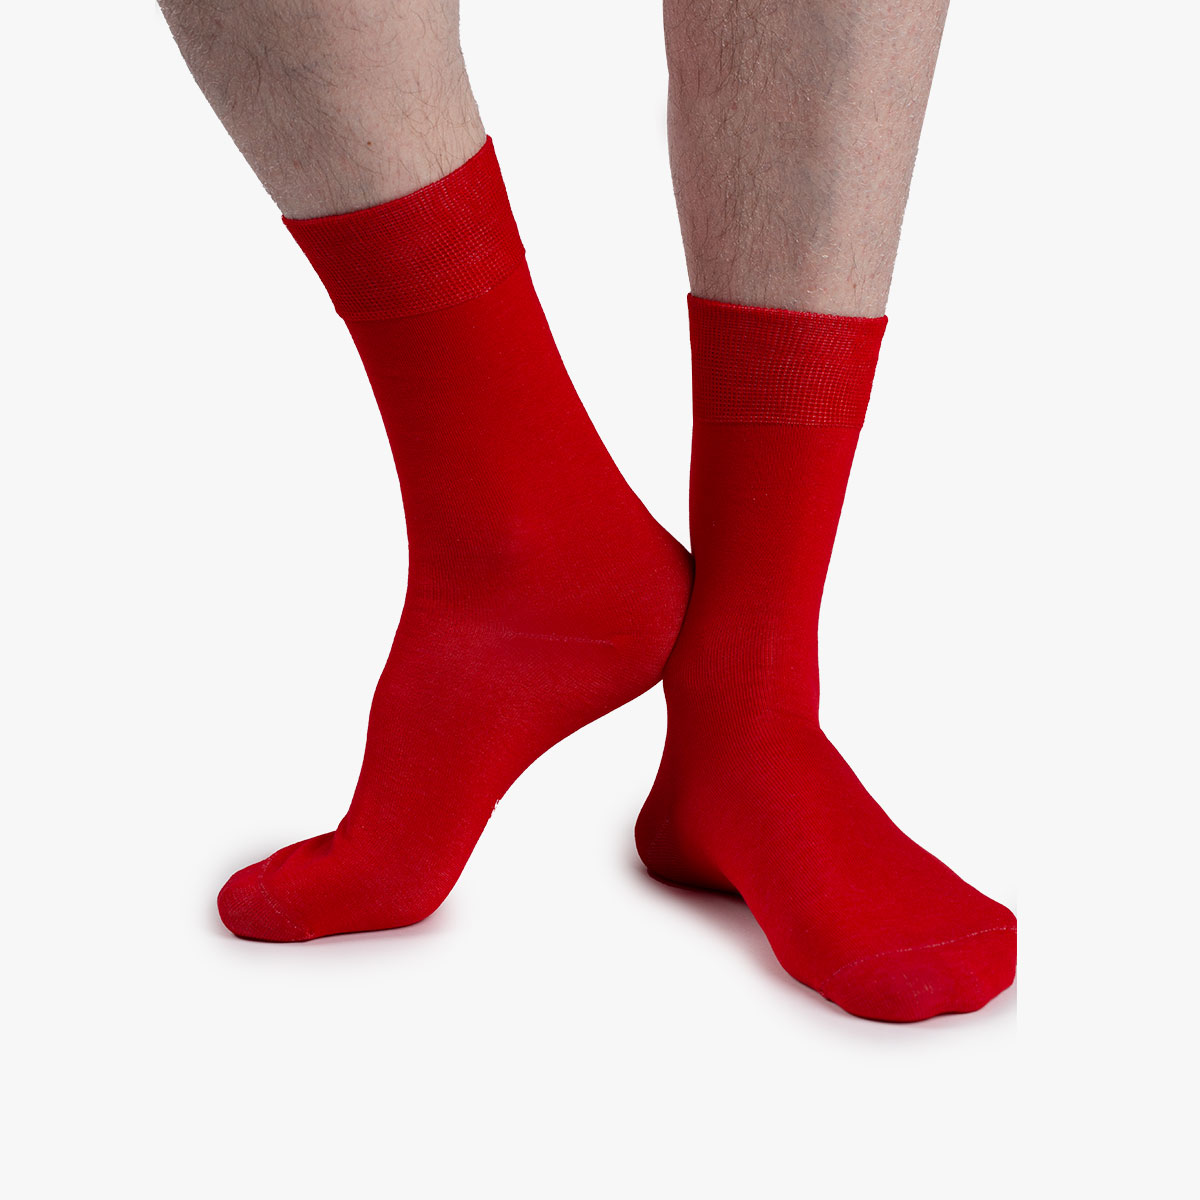 Socken in rot aus der Sockenbox am Fuß